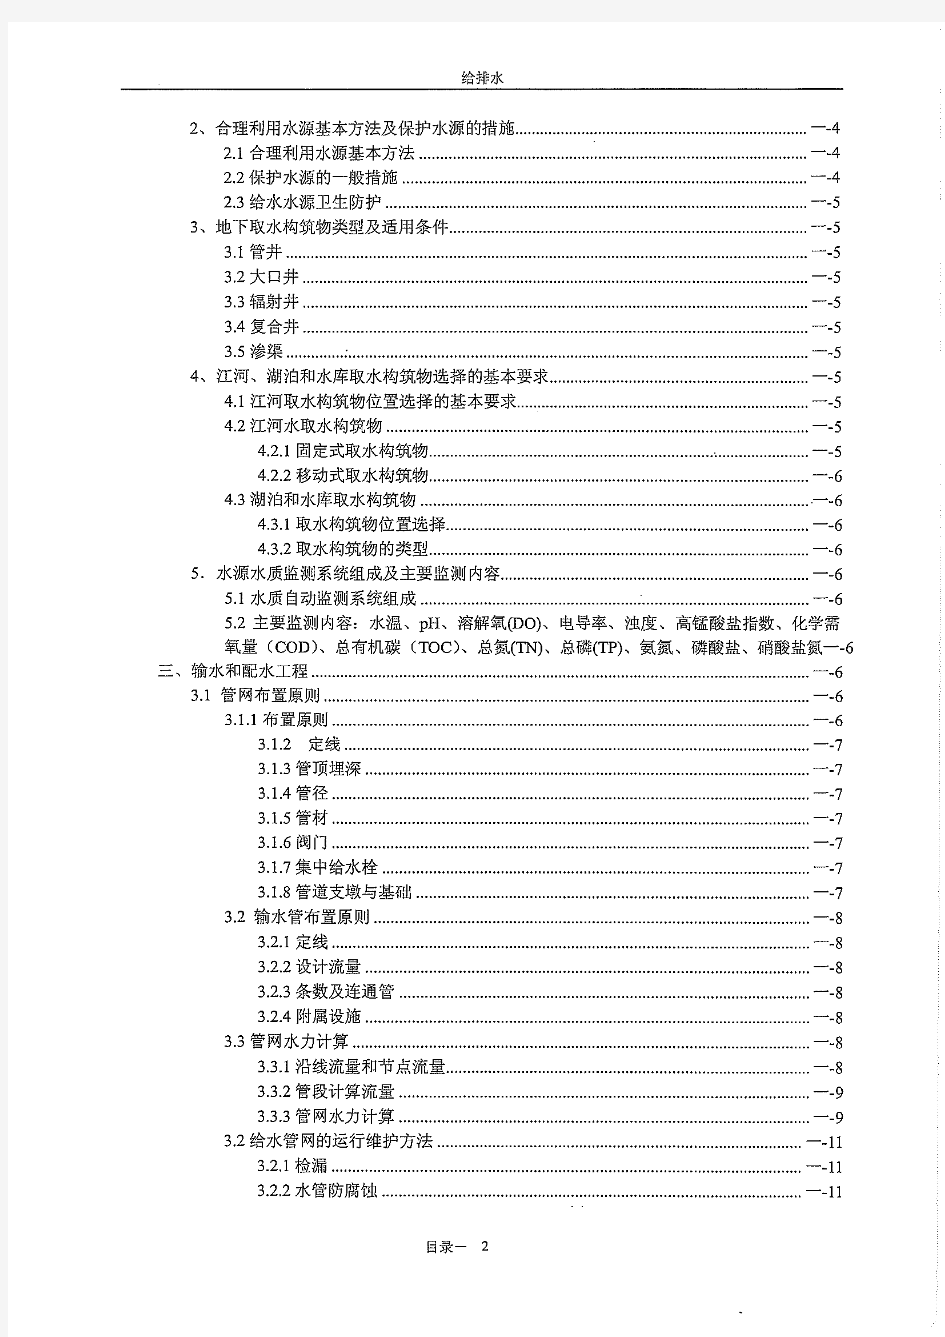 北京市中级职称考试复习资料-给排水专业(与考题很切合)